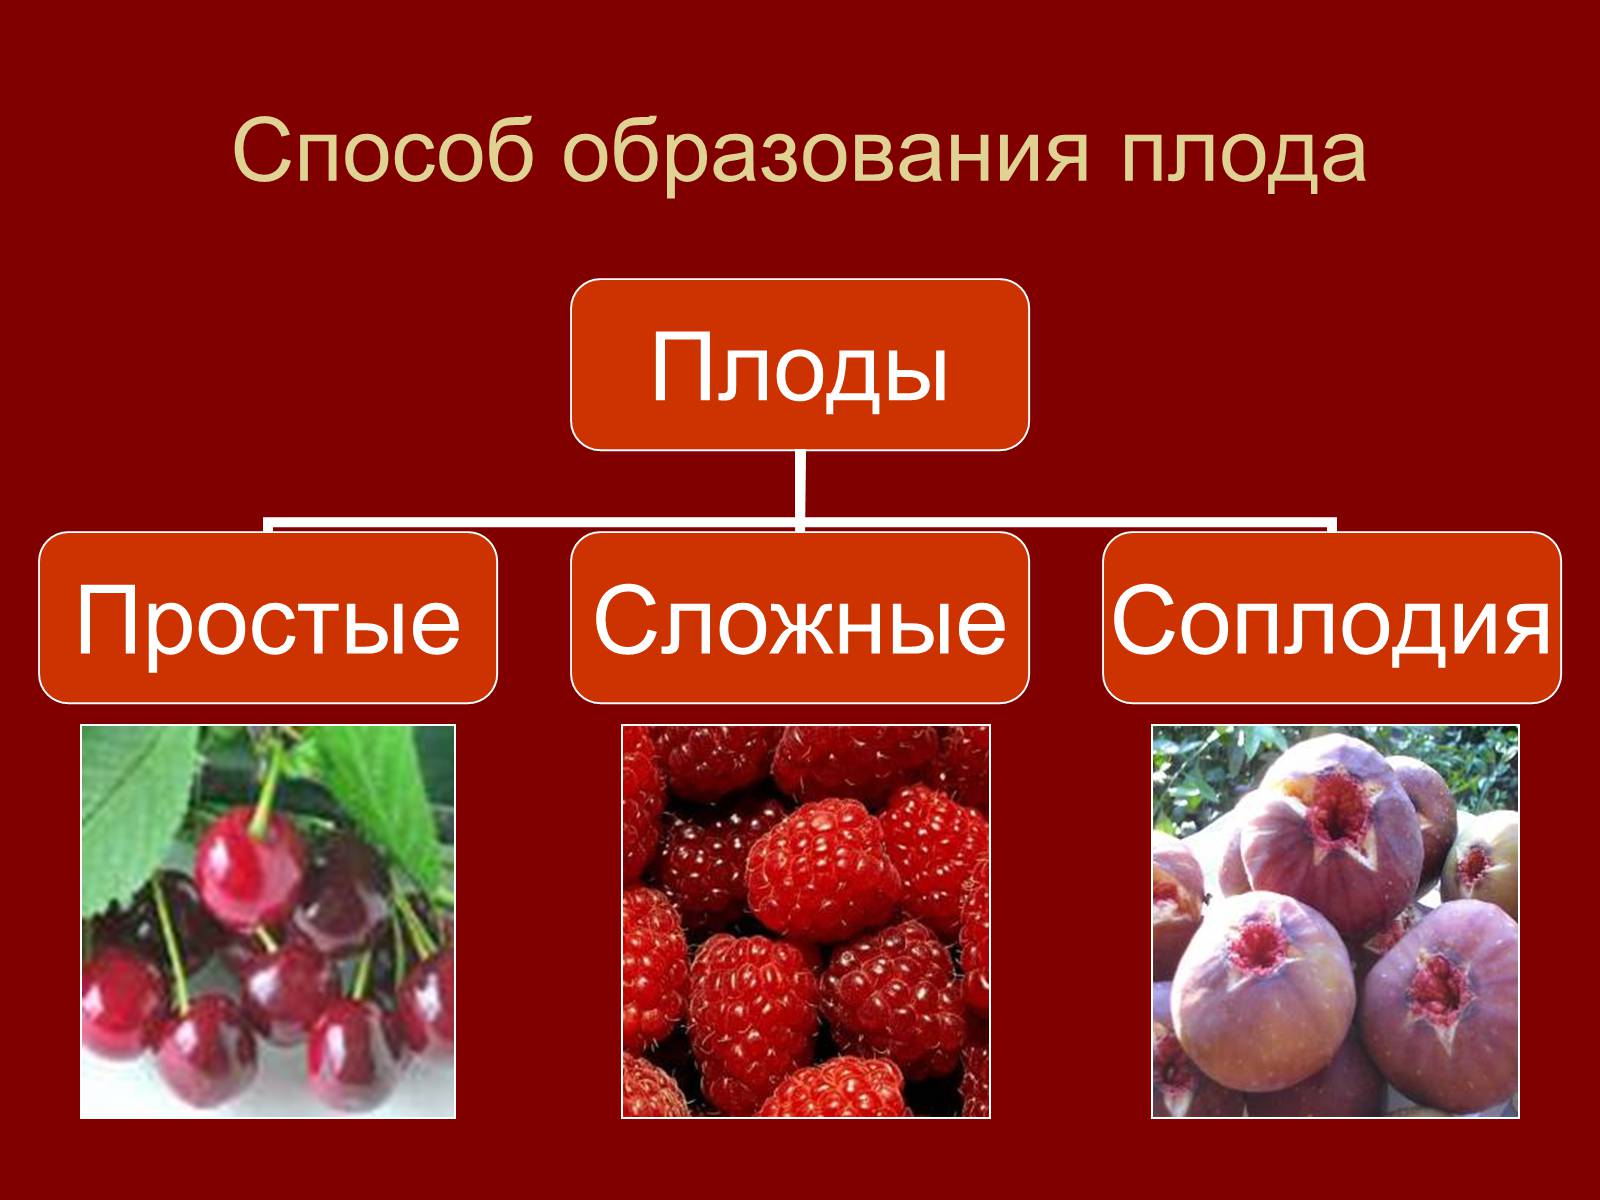 Простые плоды сложные плоды соплодия. Сложные плоды. Простые и сложные плоды. Сборные плоды. Плоды простые сложные соплодие.